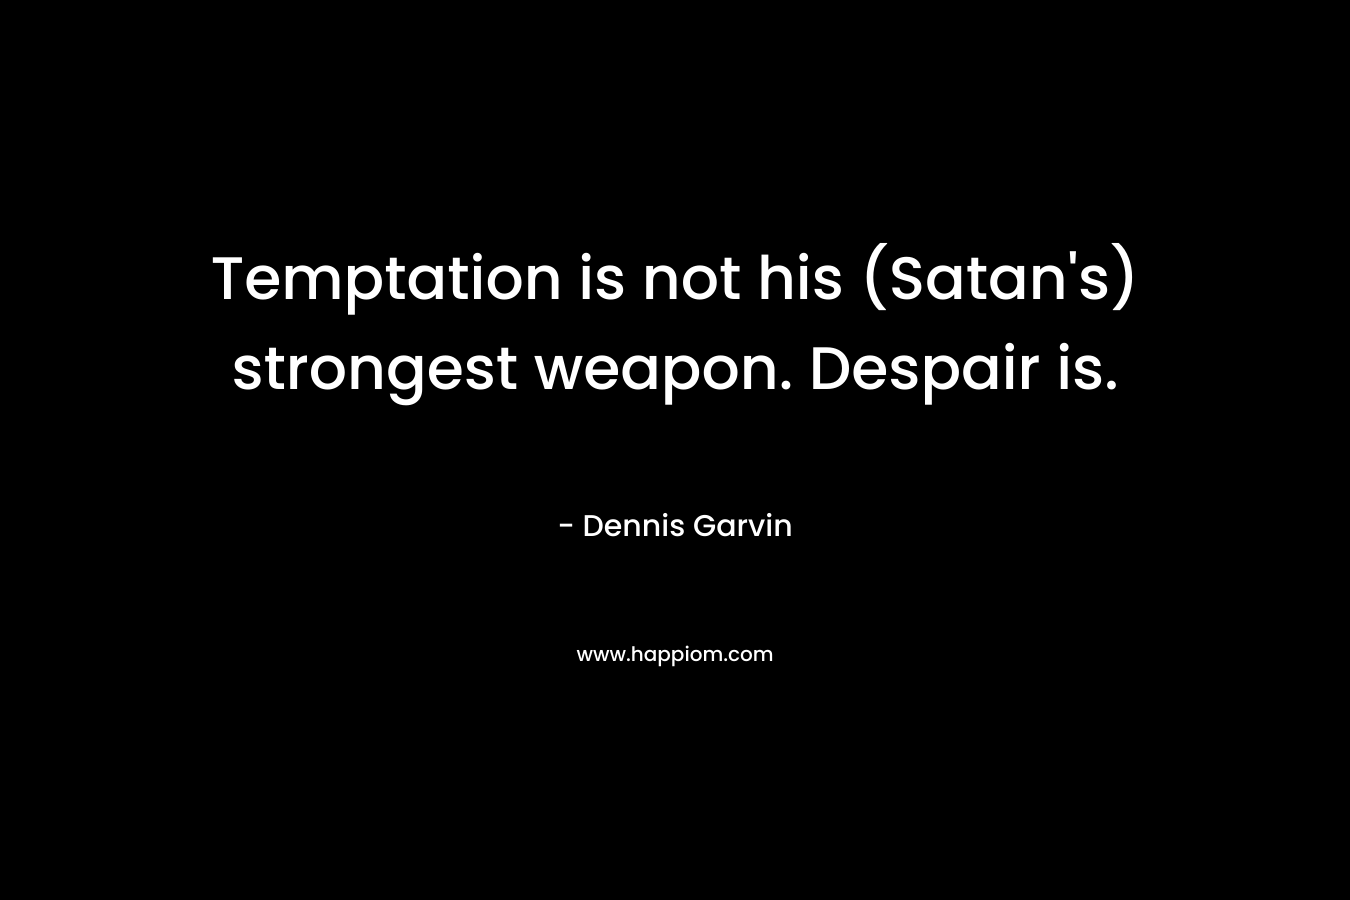 Temptation is not his (Satan's) strongest weapon. Despair is.